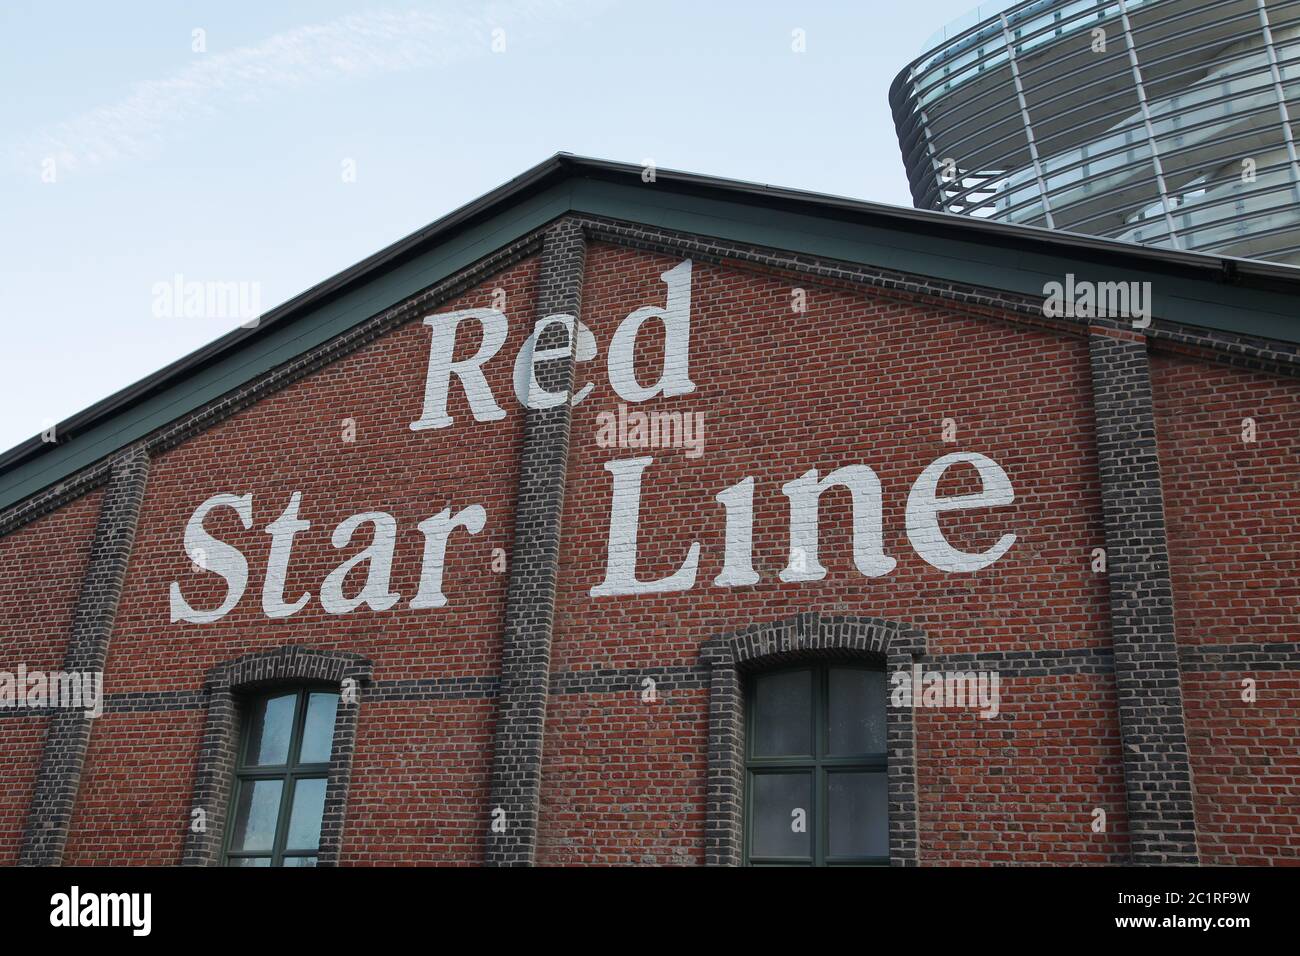 Red Star Line Museum ad Anversa. La linea di navigazione Red Star Line fondata nel 1871. Joint venture tra la International Navigation Company di Philadelphia, che gestiva anche la American Line, e la Société Anonyme de Navigation Belgo-Américaine di Anversa, Belgio. Foto Stock